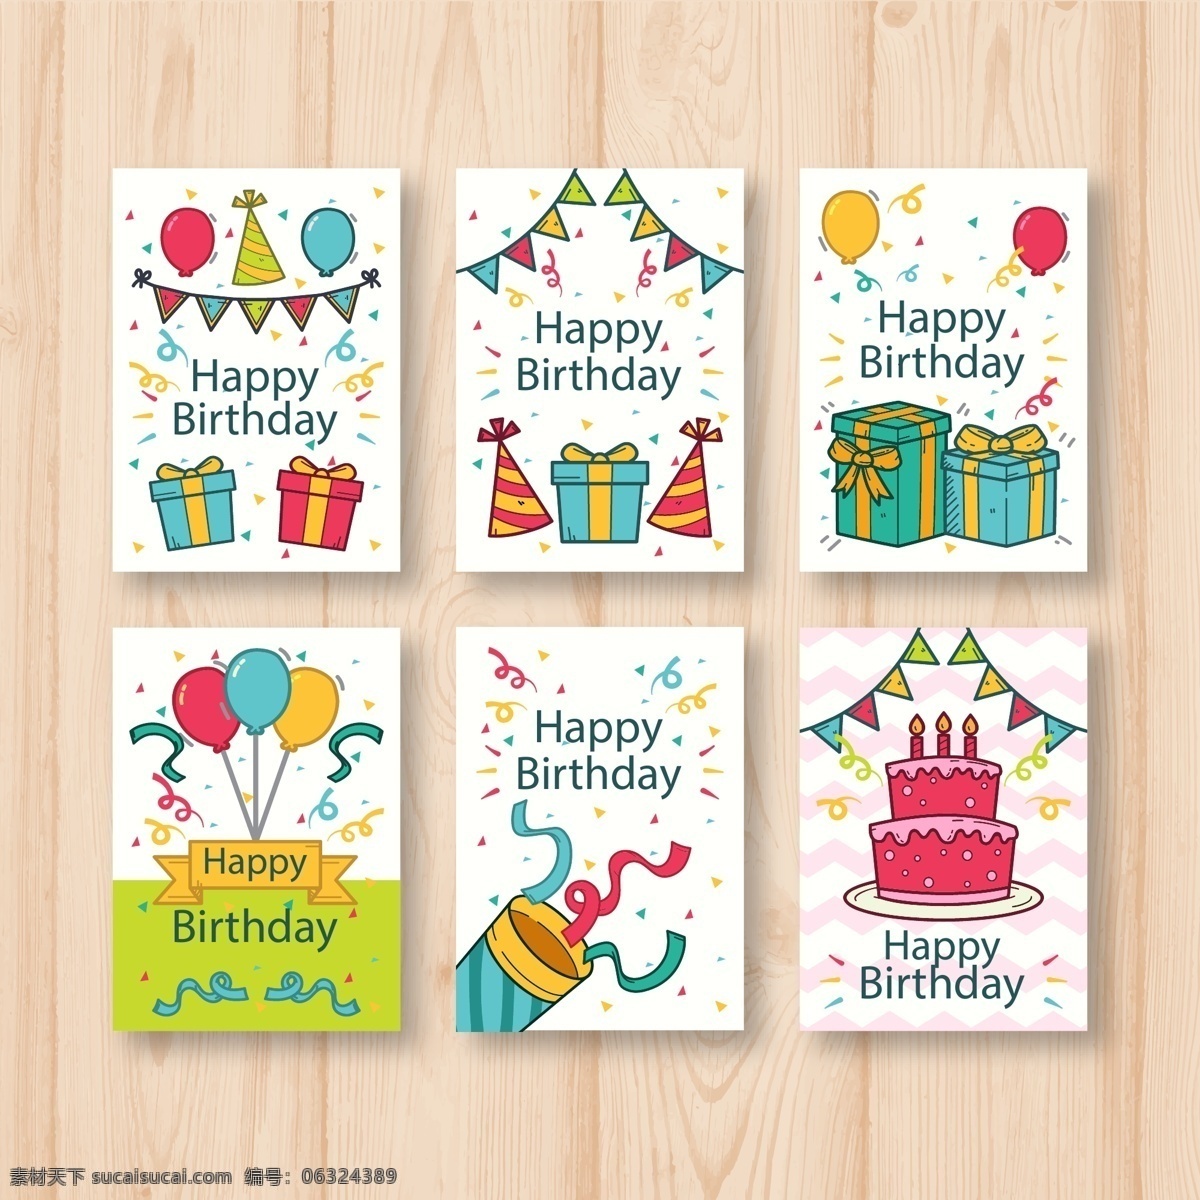 生日贺卡 矢量 生日快乐 气球 礼物 卡片 矢量素材 生日蛋糕 设计素材 平面素材